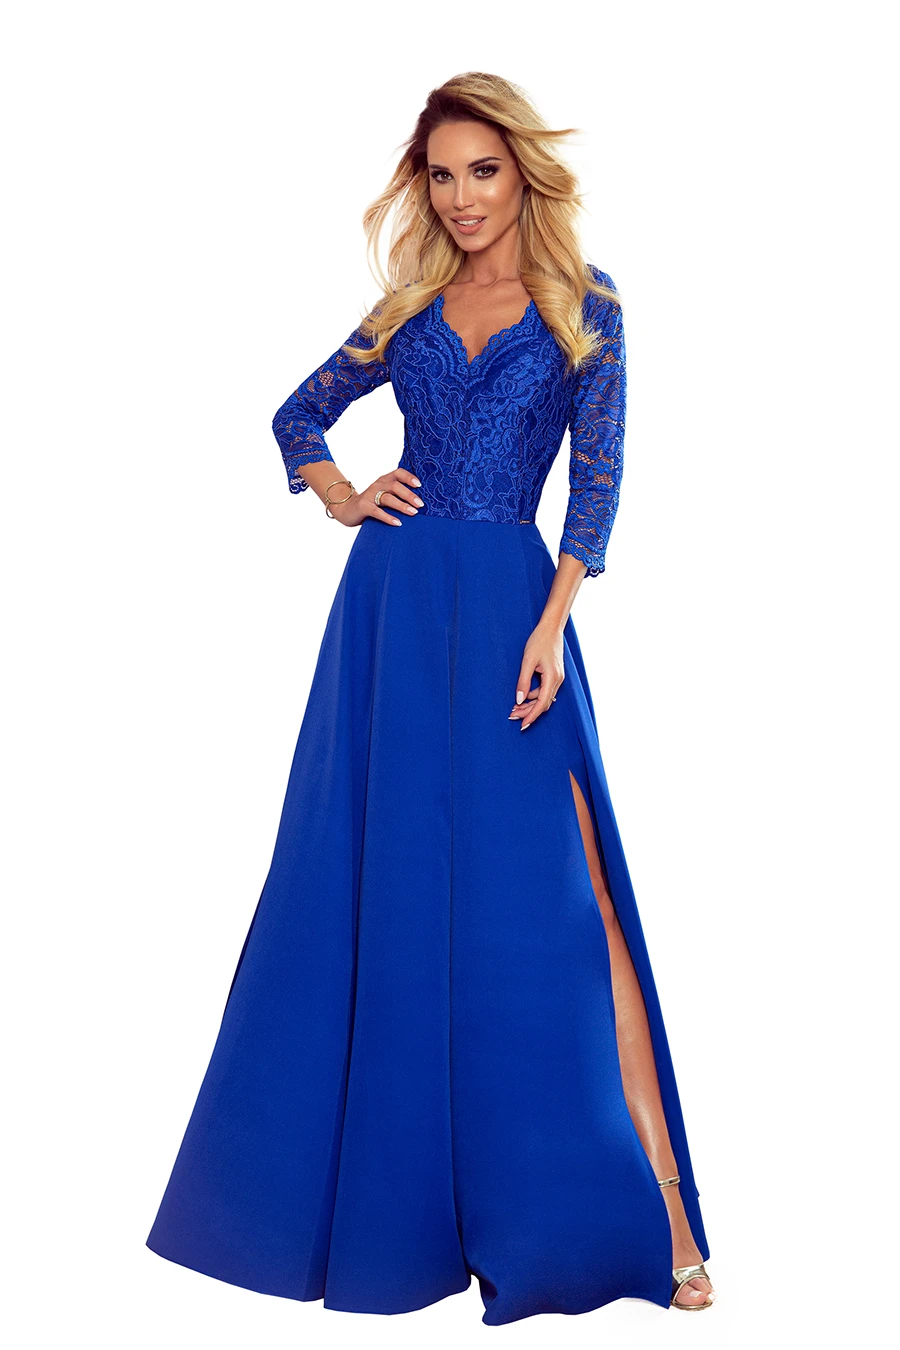  309-2 AMBER elegancka koronkowa długa suknia z dekoltem - CHABROWA 